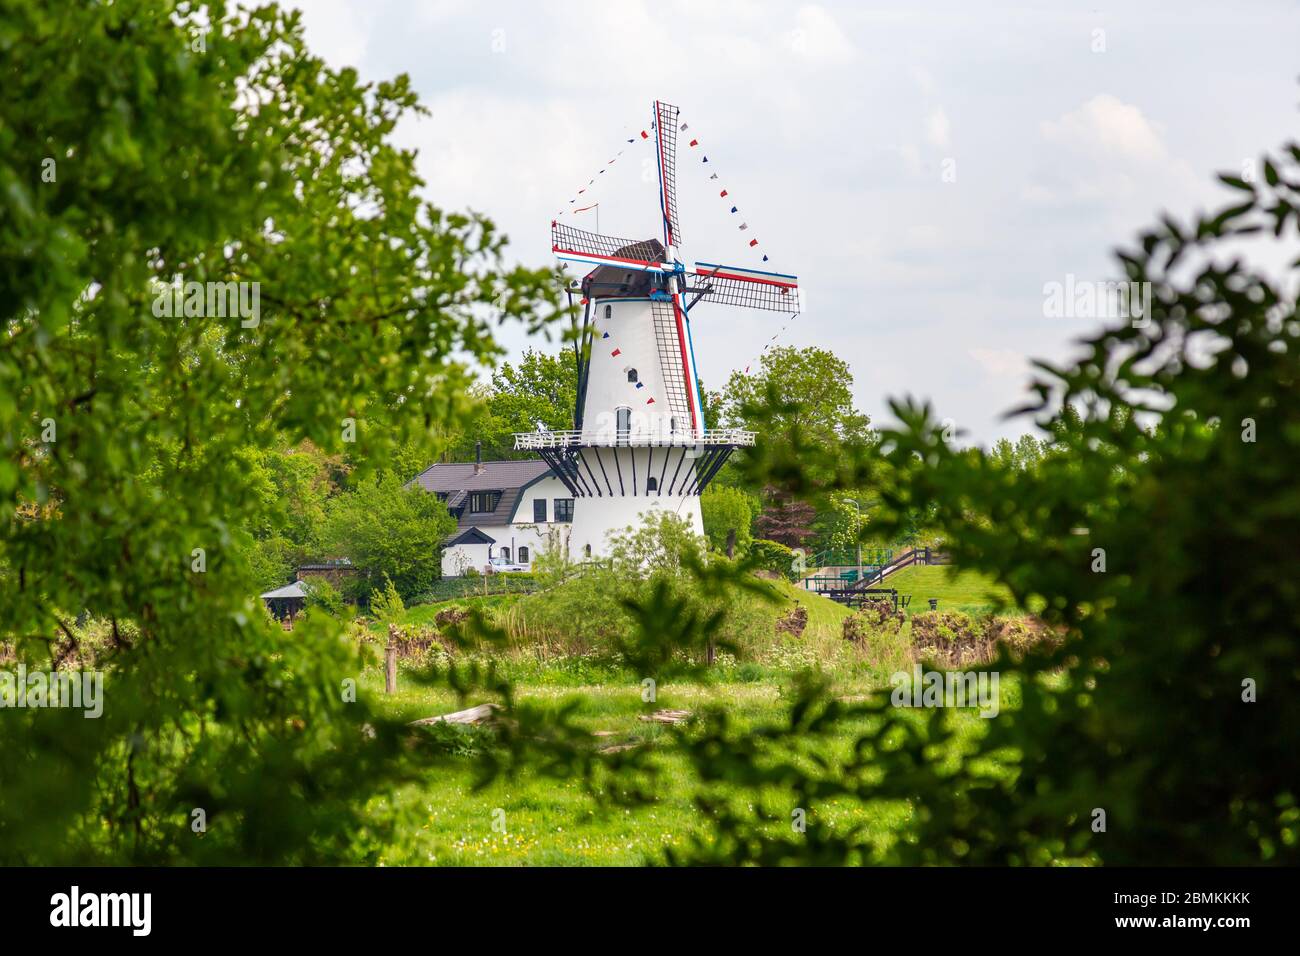 Windmill De Vlinder along estate Heerlijkheid Marienwaerdt in he Betuwe near Beesd, Gelderland The Netherlands Stock Photo